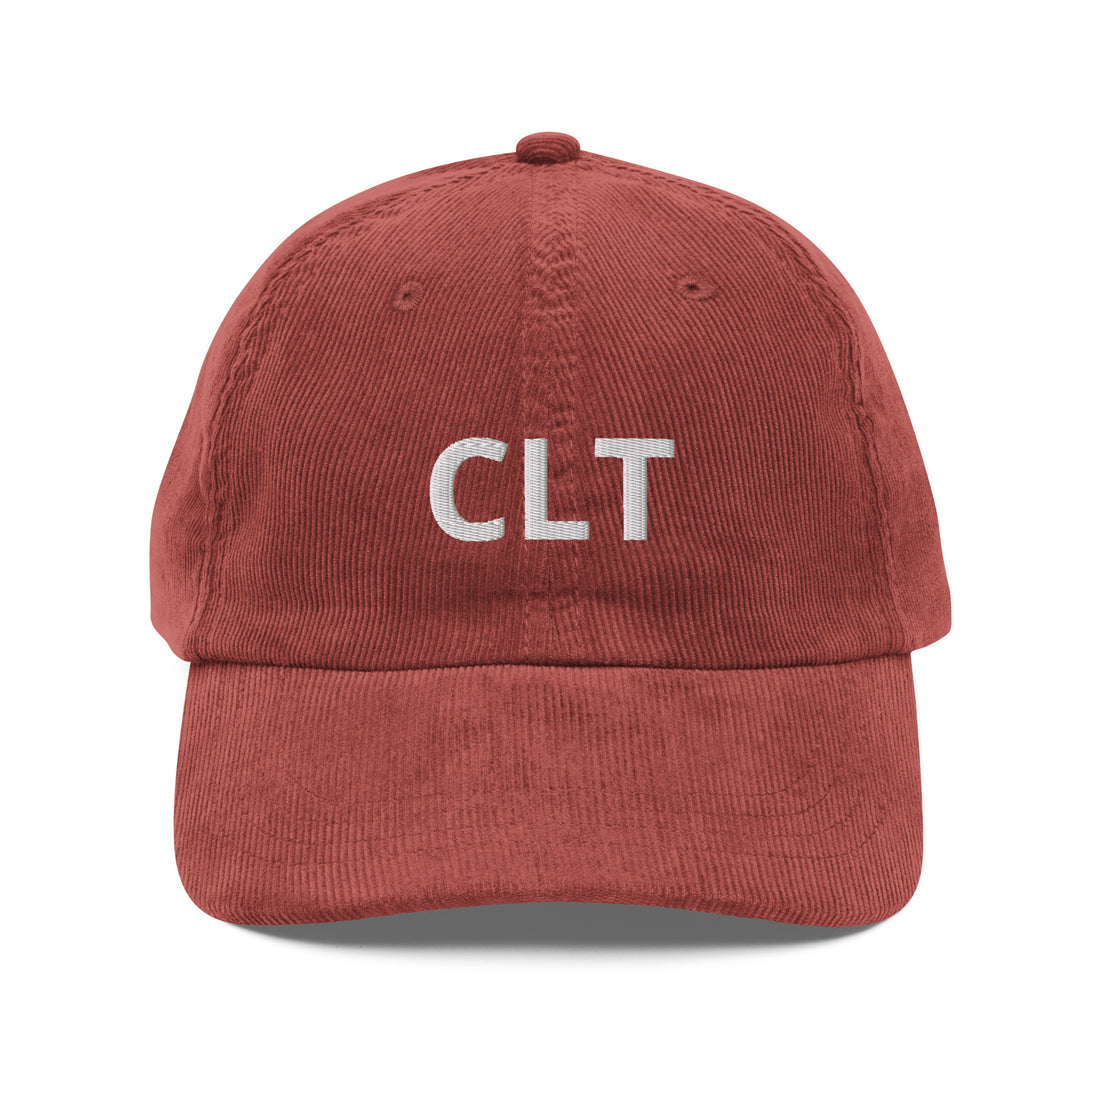 CLT Vintage Cord Hat